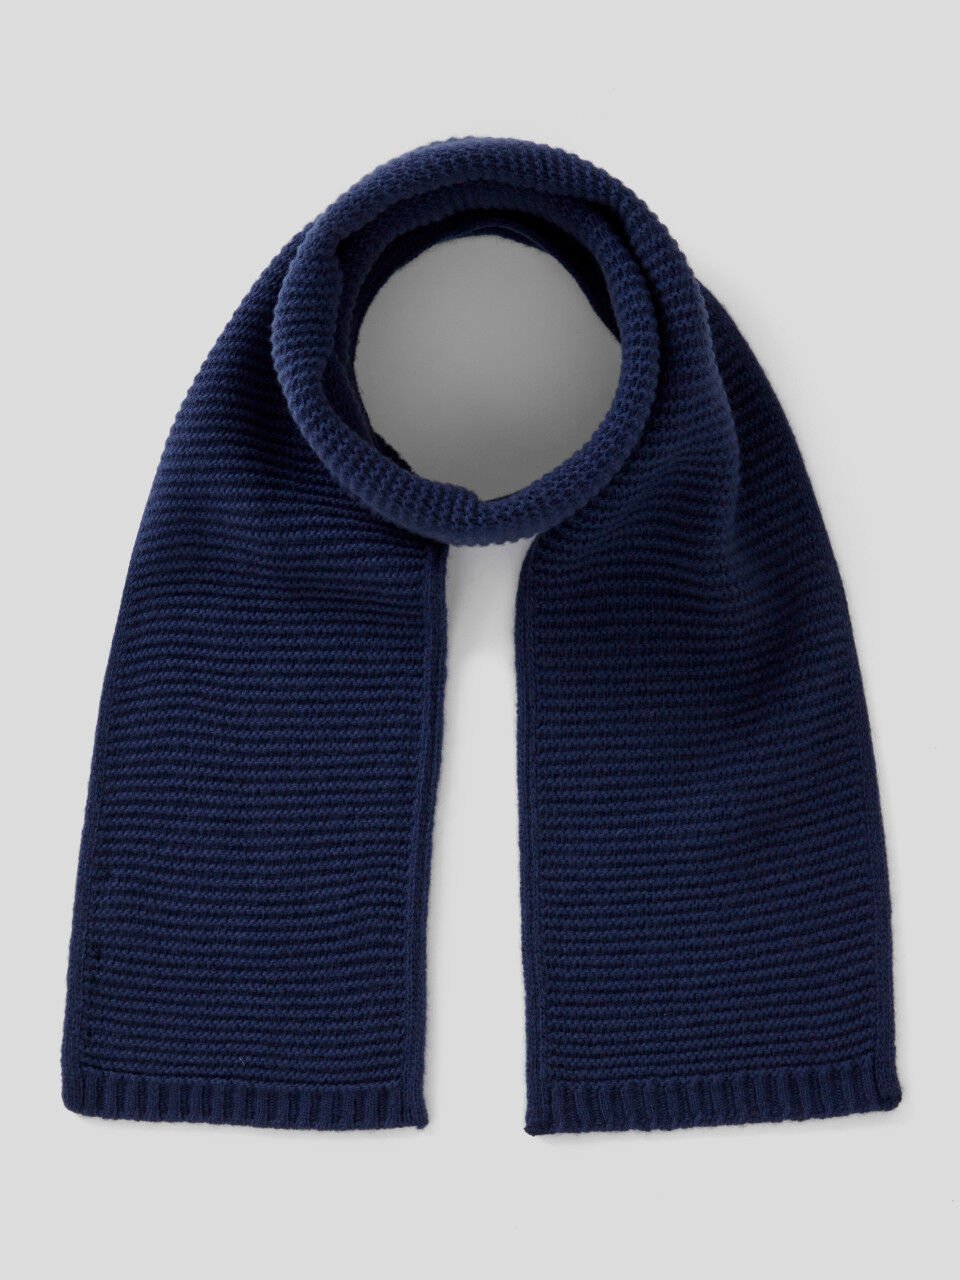 Verarbeiteter Schal aus einer stretchigen Wollmischung